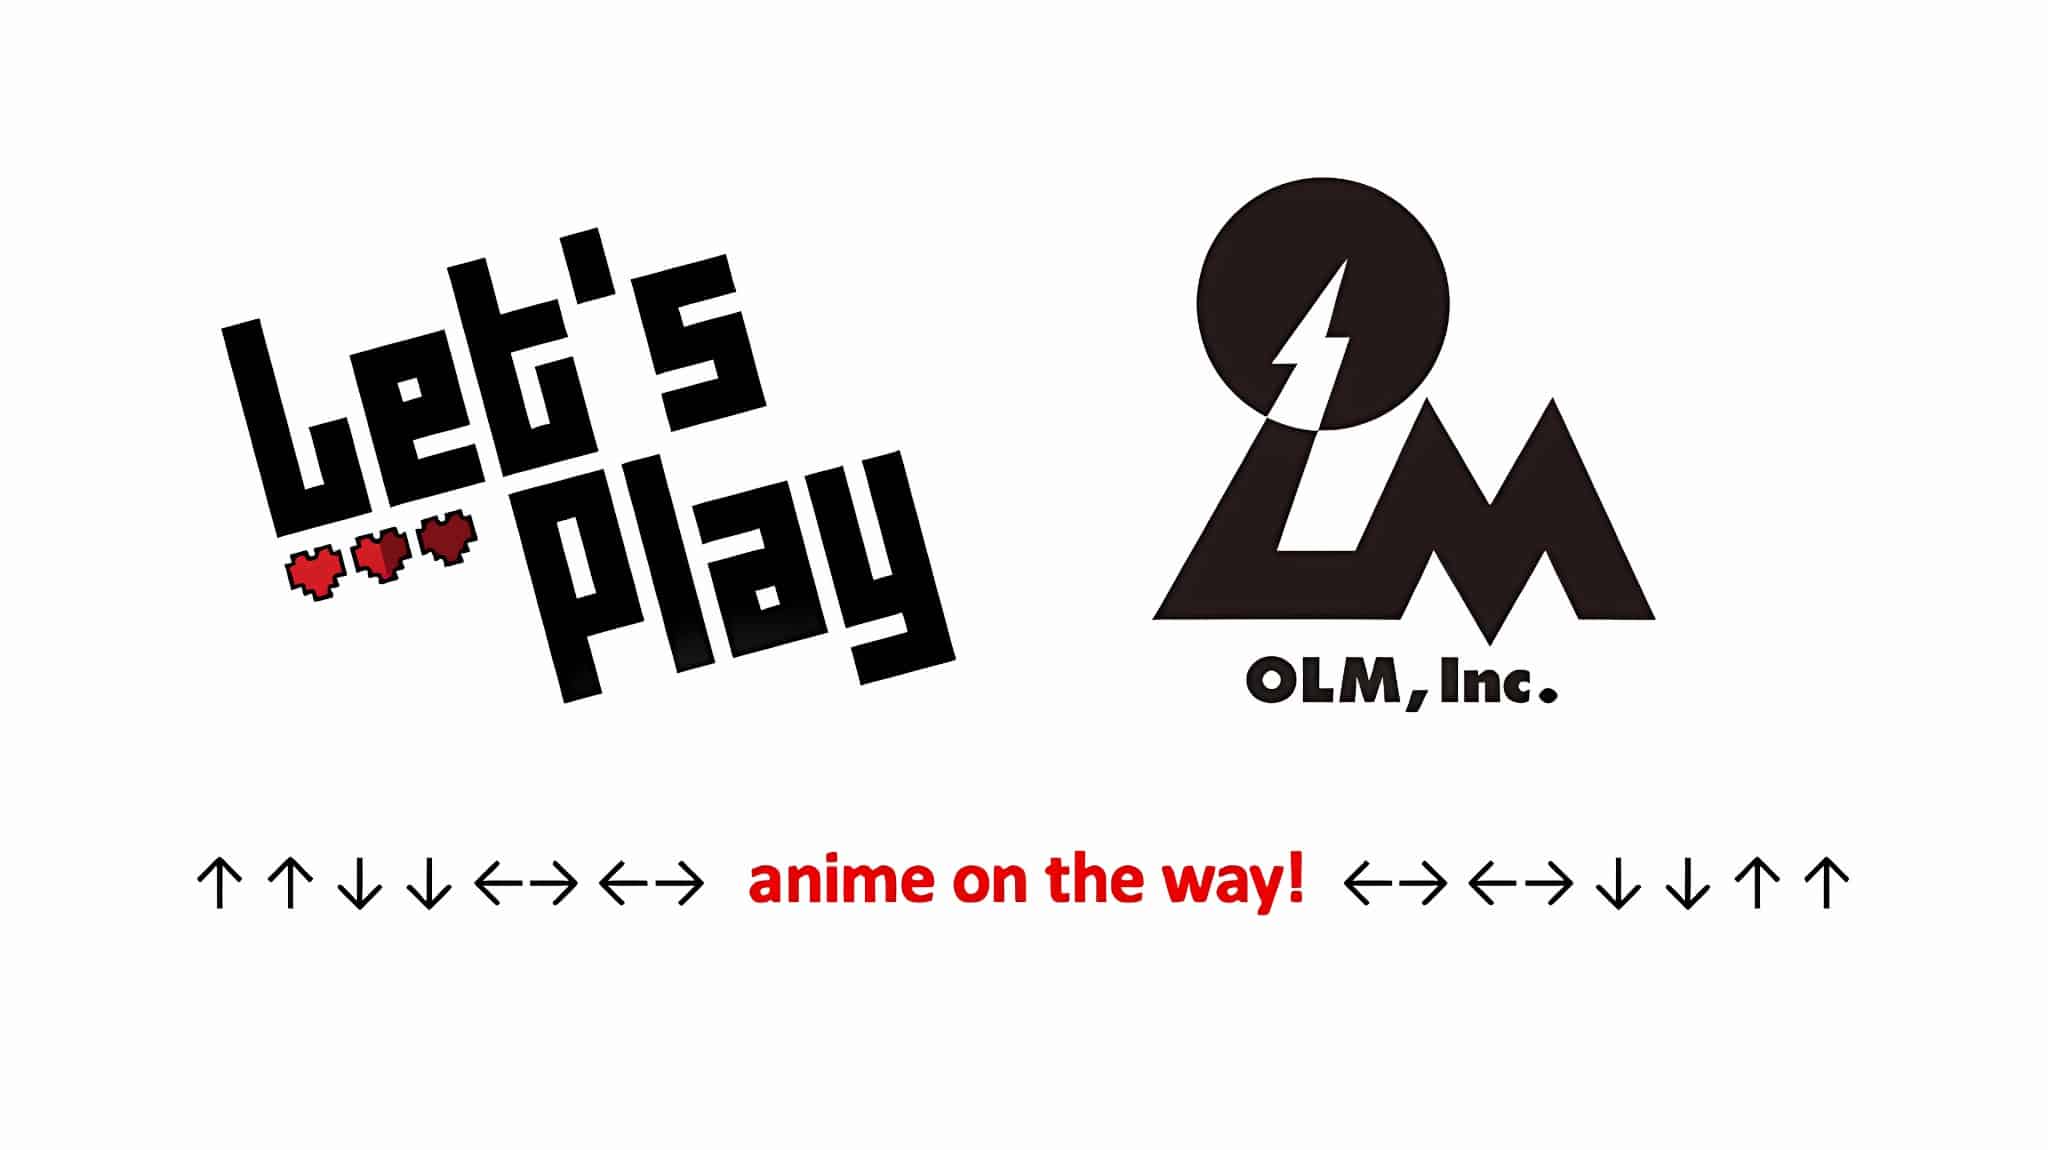 Annonce de lanime Lets Play par le studio OLM